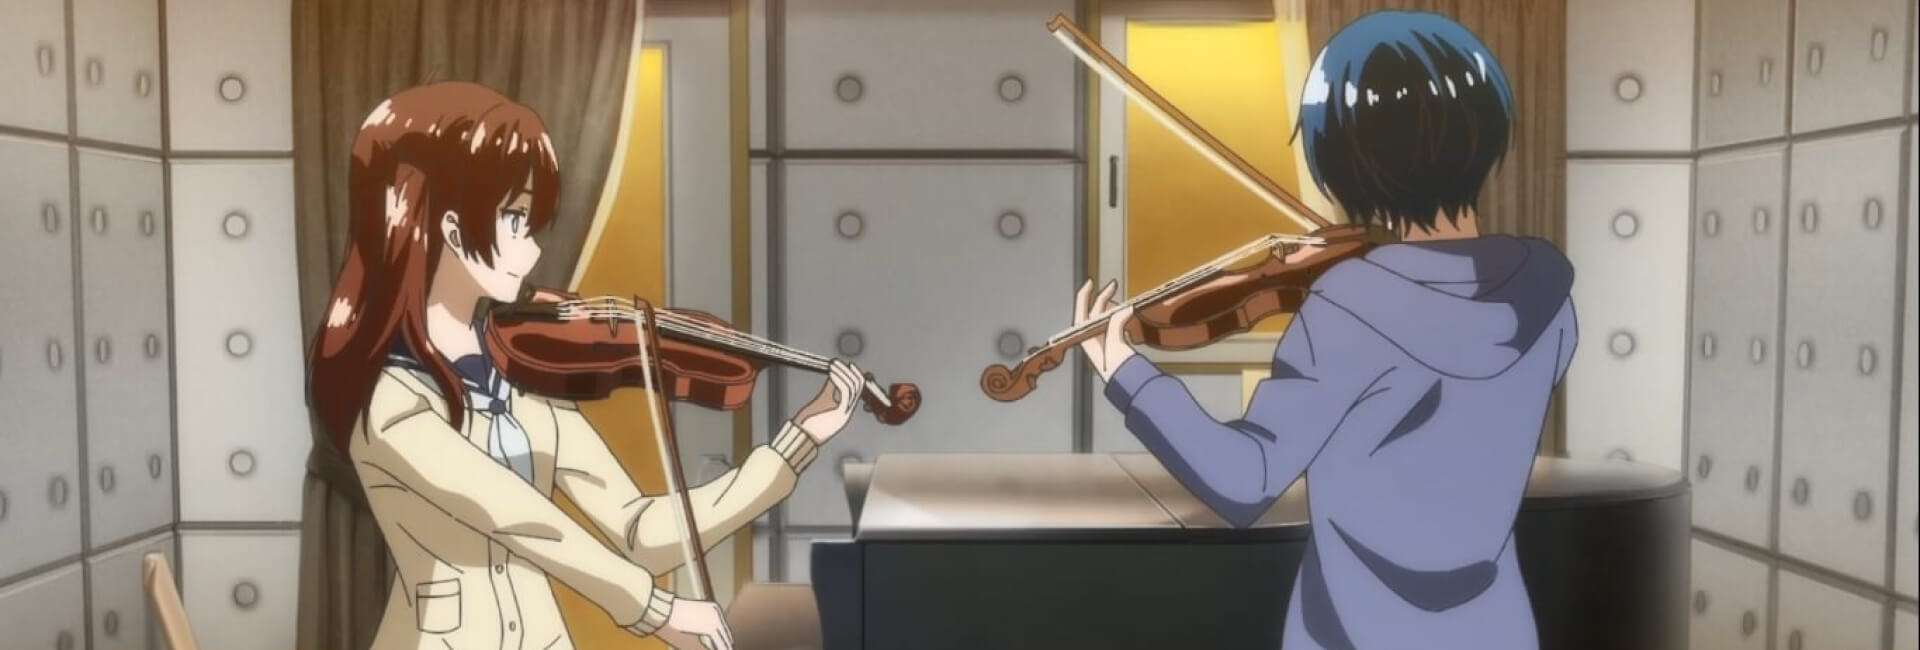 Os protagonistas de Ao no Orchestra tocando violino